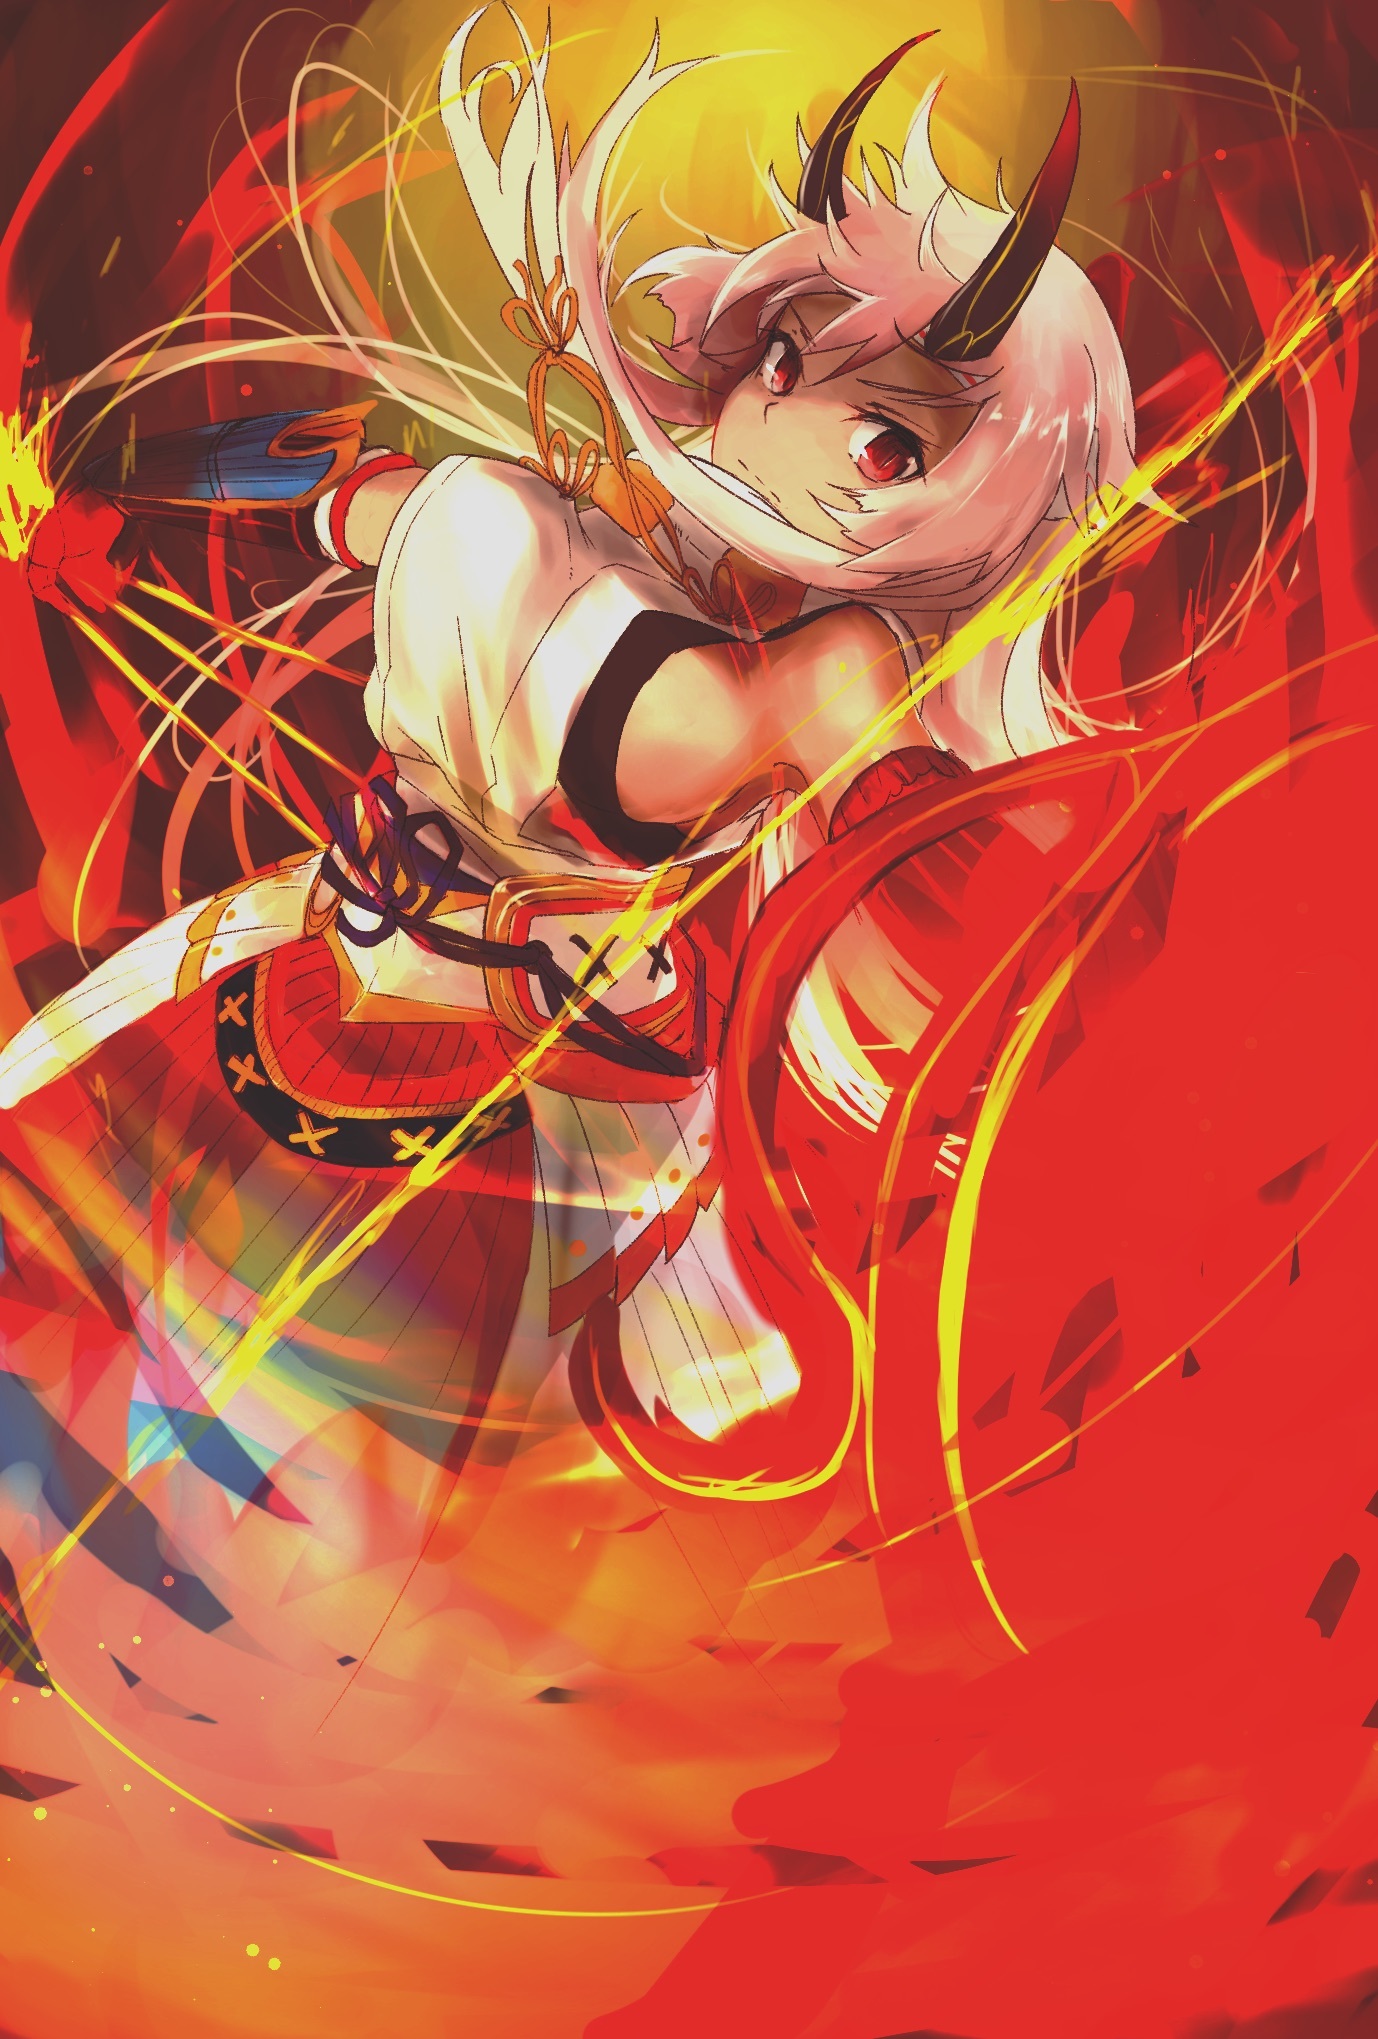 Fate Grandorder アーチャー インフェルノ Archer Inferno No 4588 厳選アニメ壁紙 2017